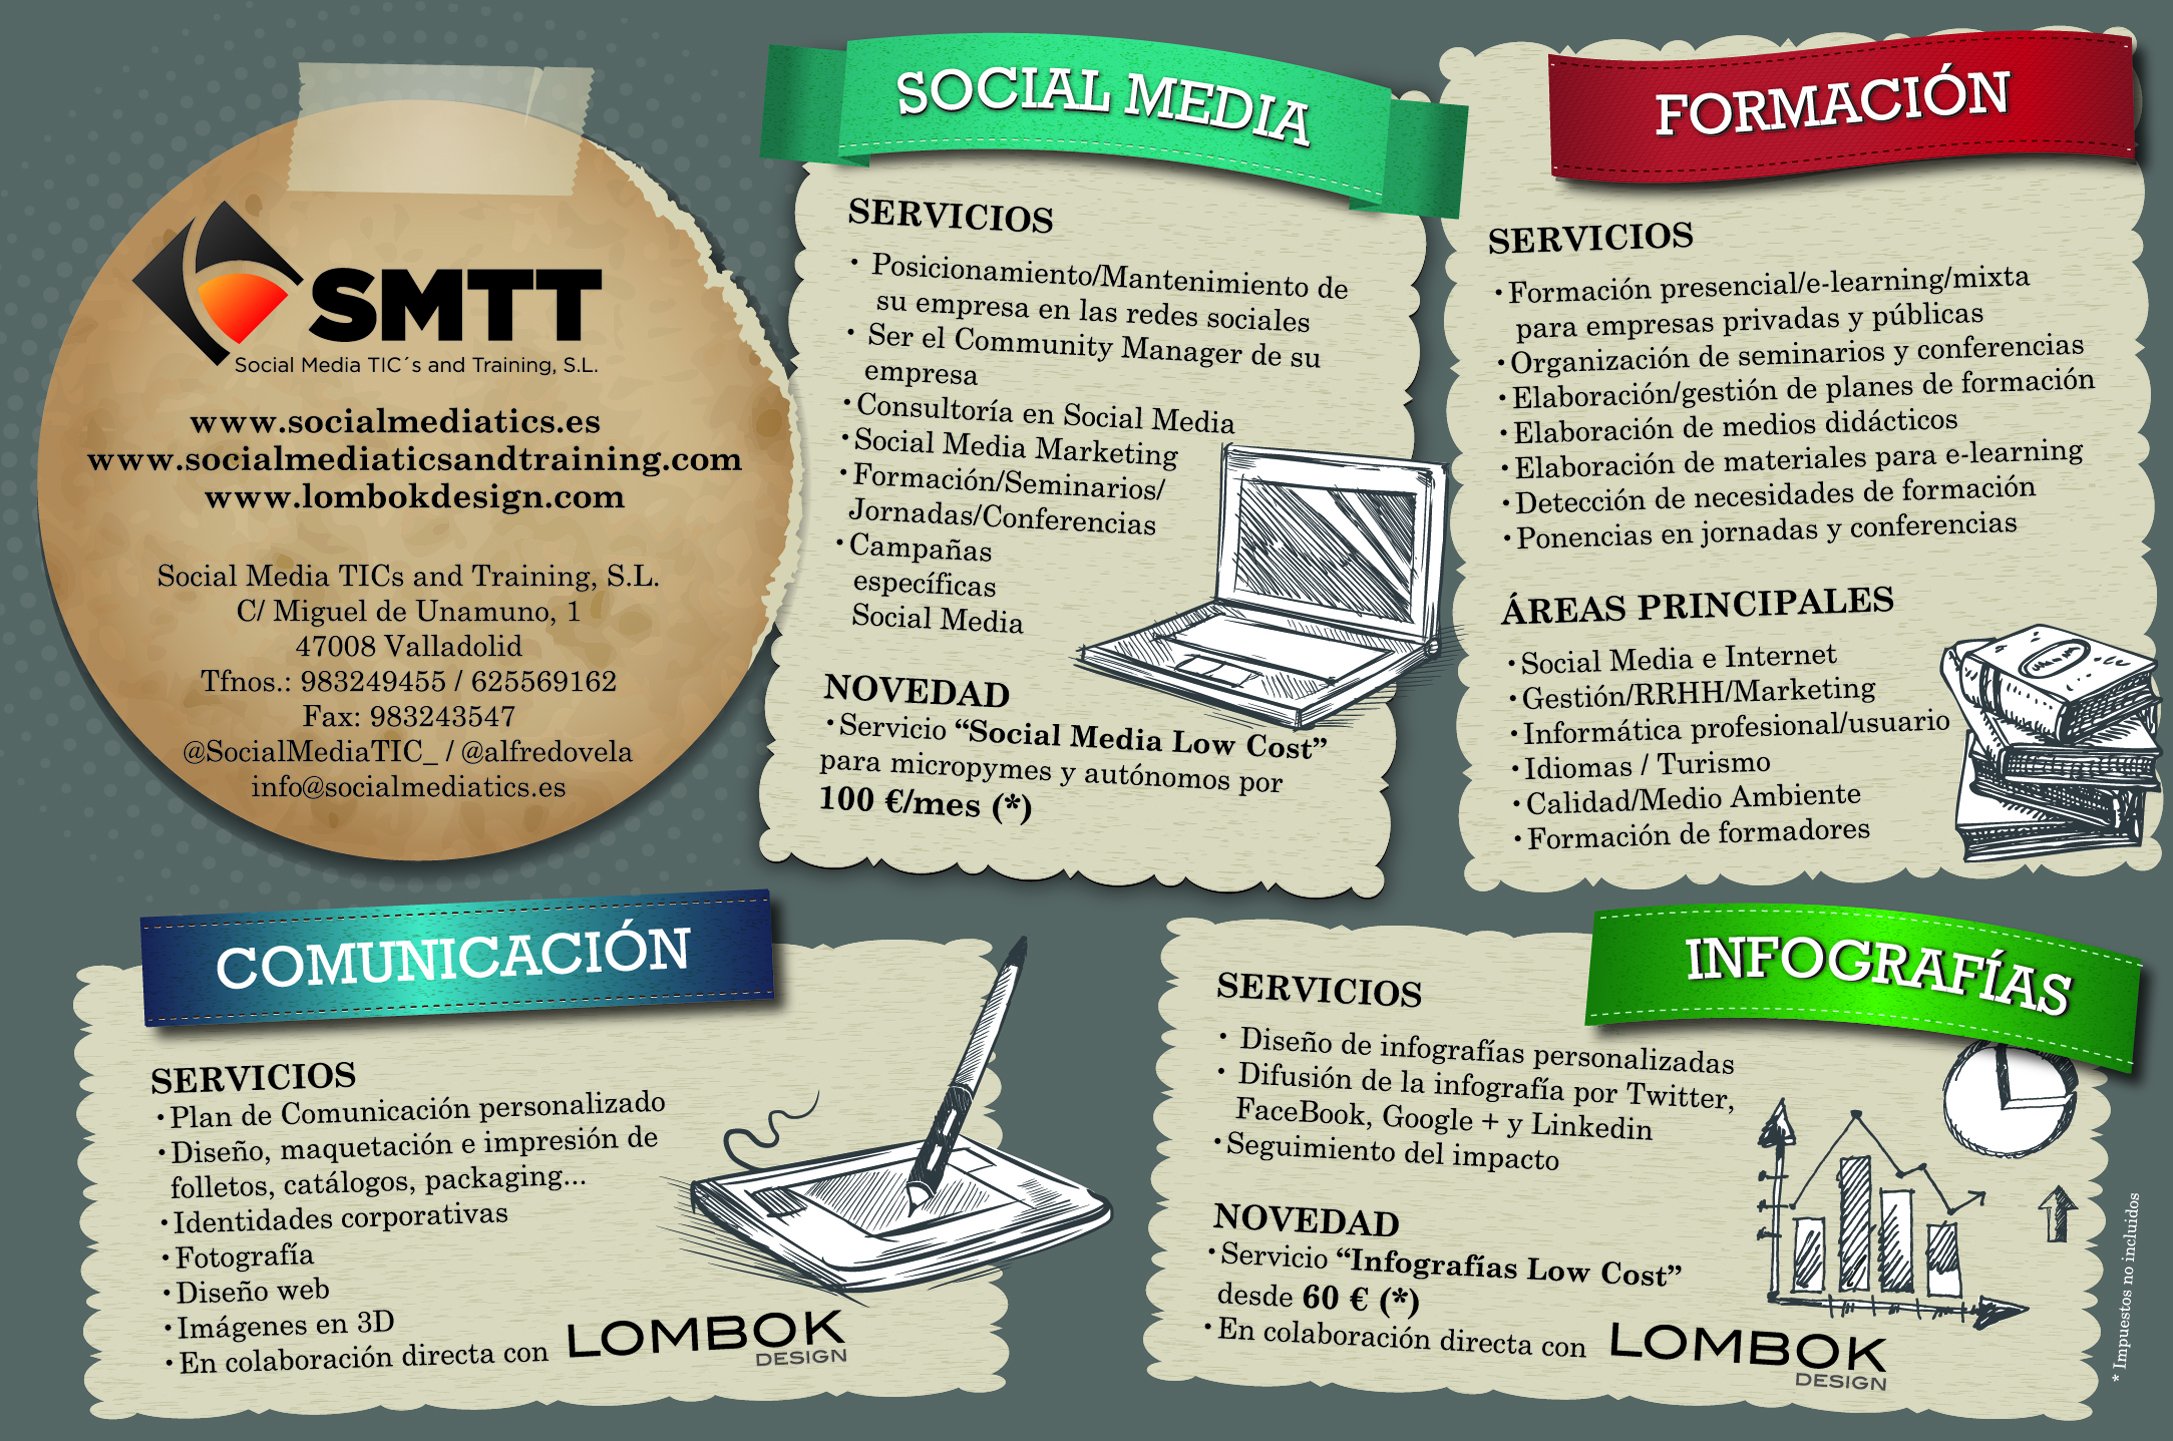 Qué es Social Media TICs and Training, S.L.